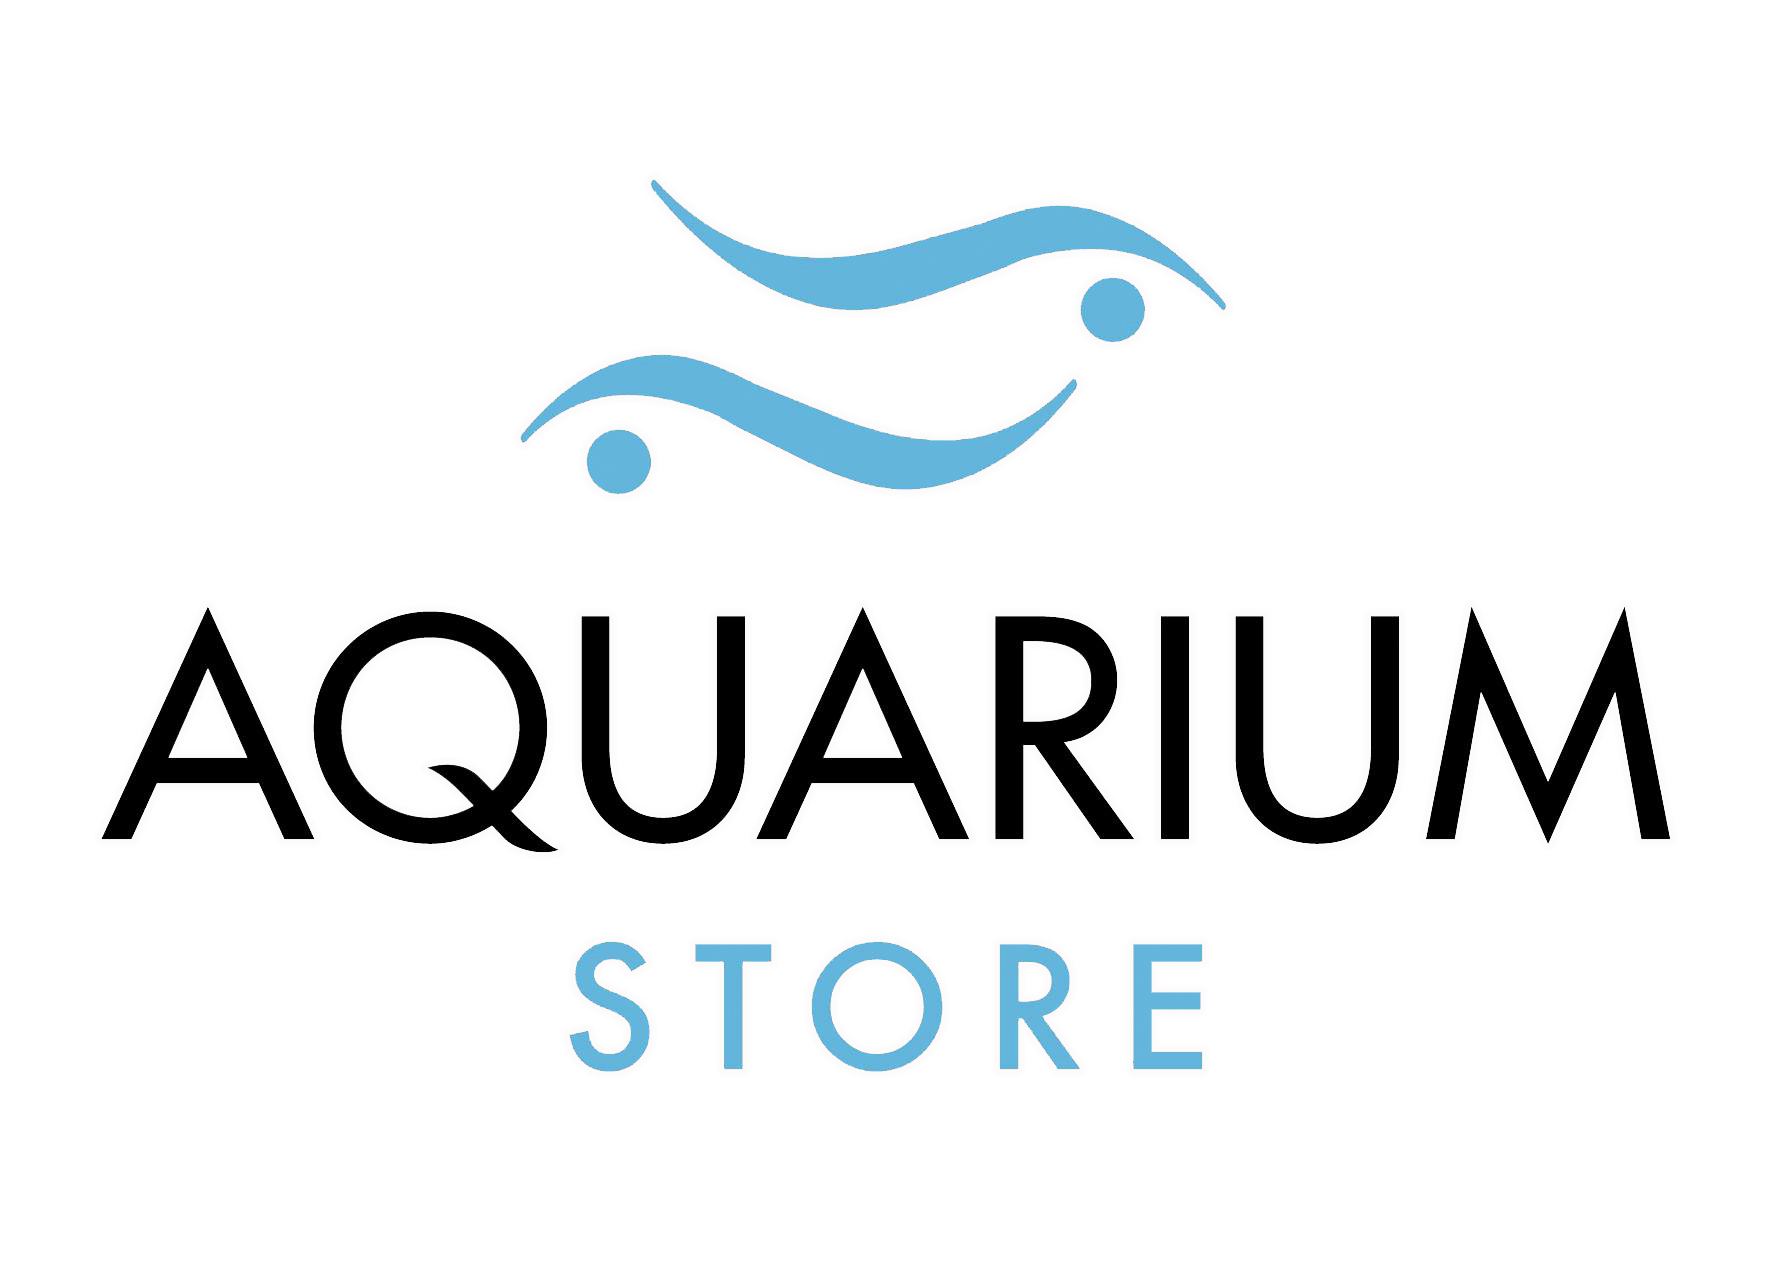 Aquarium Store